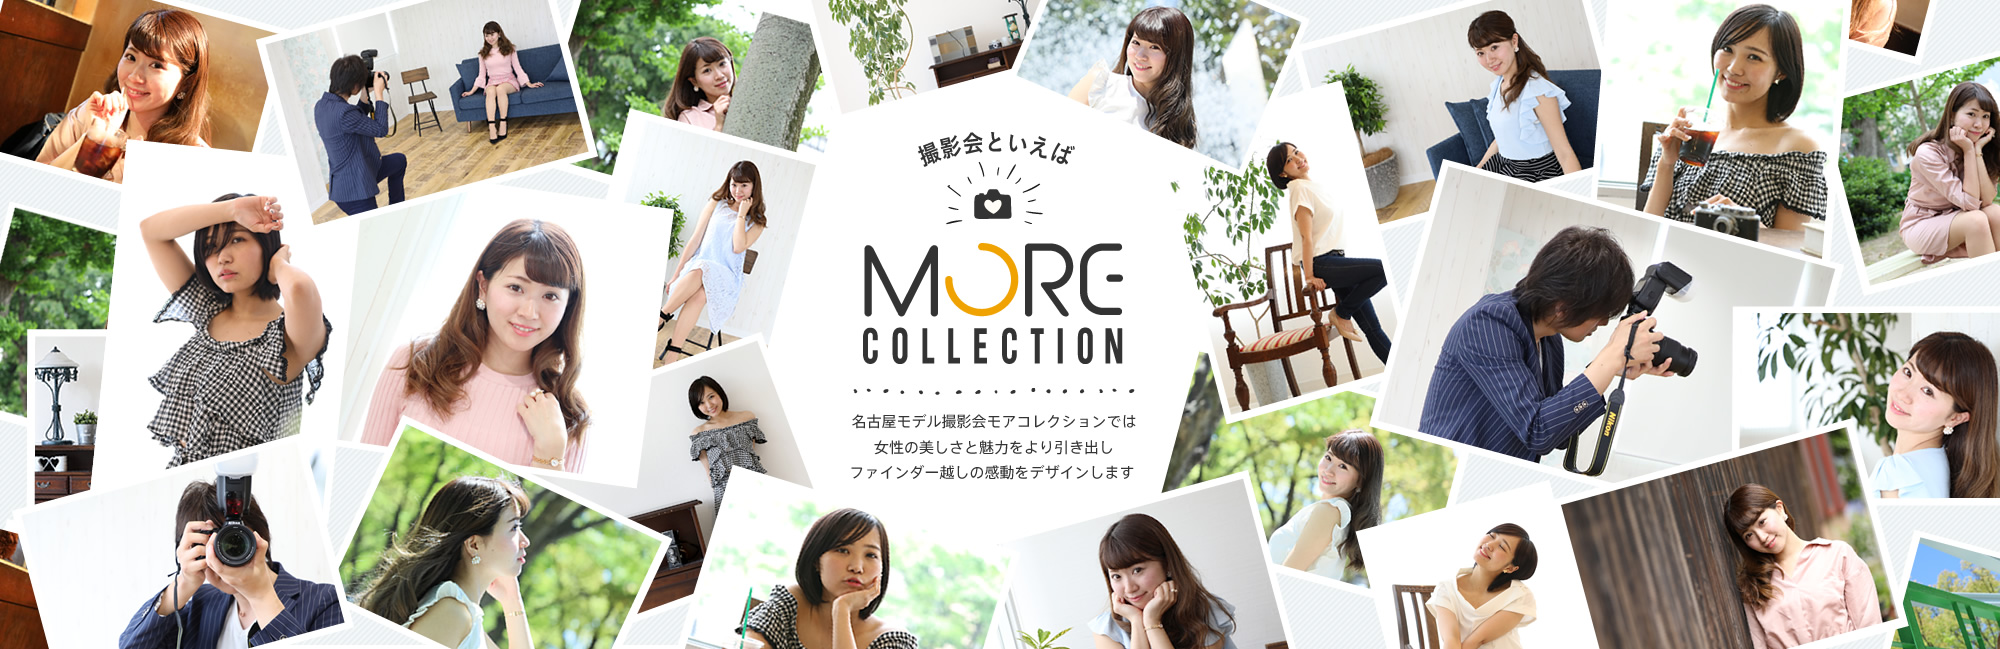 撮影会といえば「MORE COLLECTION」名古屋のモデル撮影会モアコレクションでは、女性の美しさと魅力をより引き出し、ファインダー越しの感動をデザインします